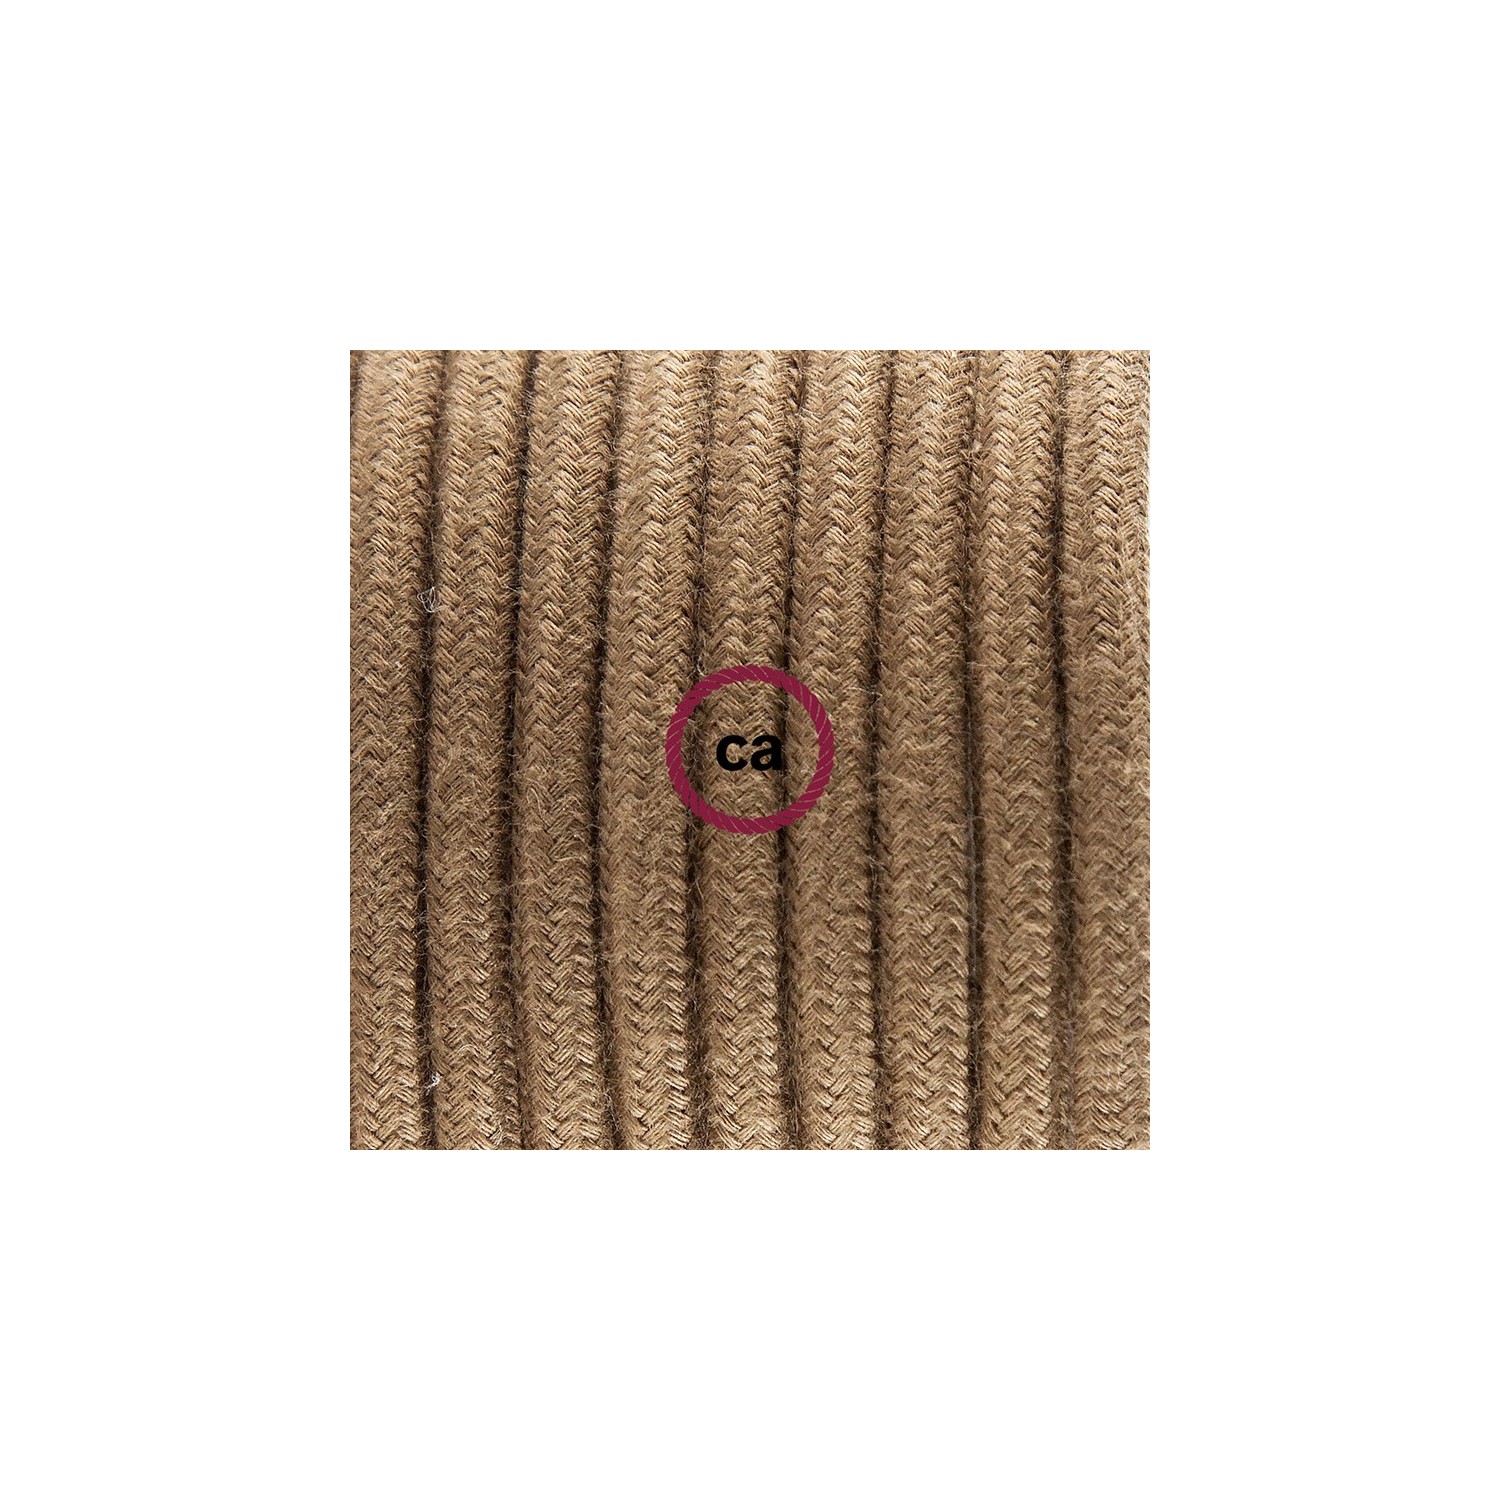 Zuleitung für Tischleuchten RC13 Braun Baumwolle 1,80 m. Wählen Sie aus drei Farben bei Schalter und Stecke.